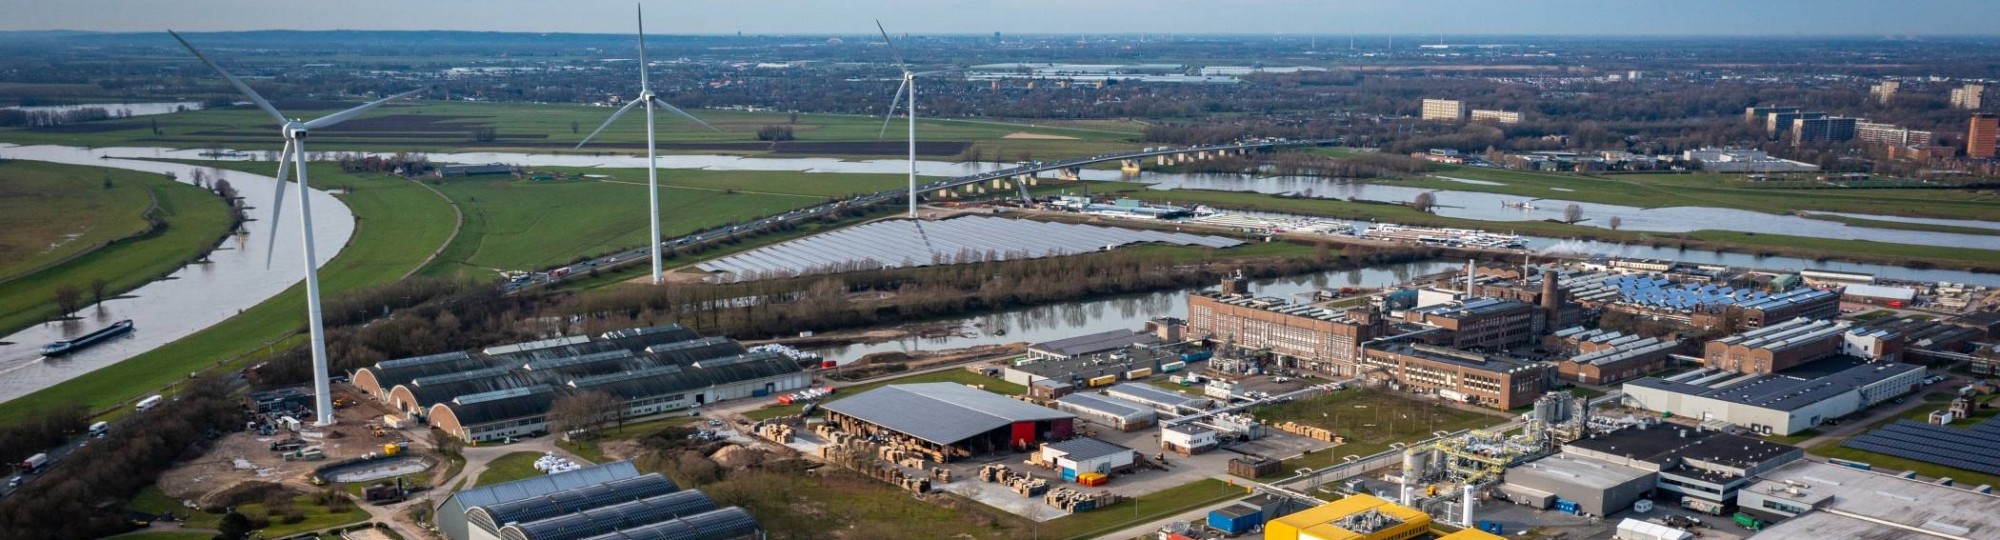 Luchtfoto van Industriepark Kleefse Waard (IPKW) waar door de Academie Engineering en Automotive o.a. projecten met waterstof worden uitgevoerd. 